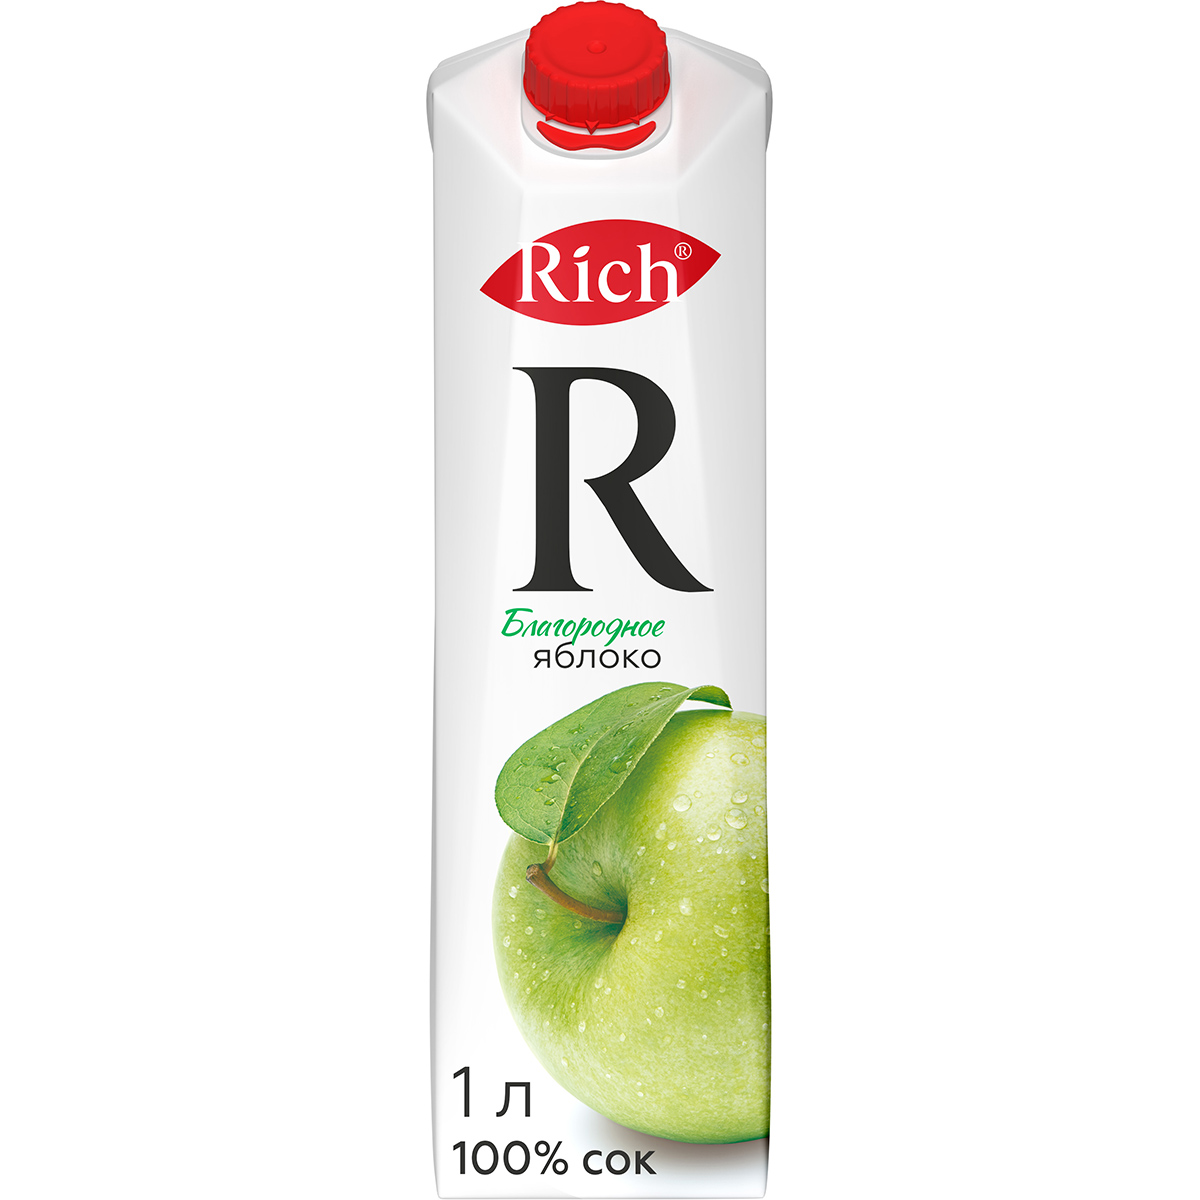 Сок Rich яблочный осветленный 100% 1 л сок rich персиковый 100% 0 2л